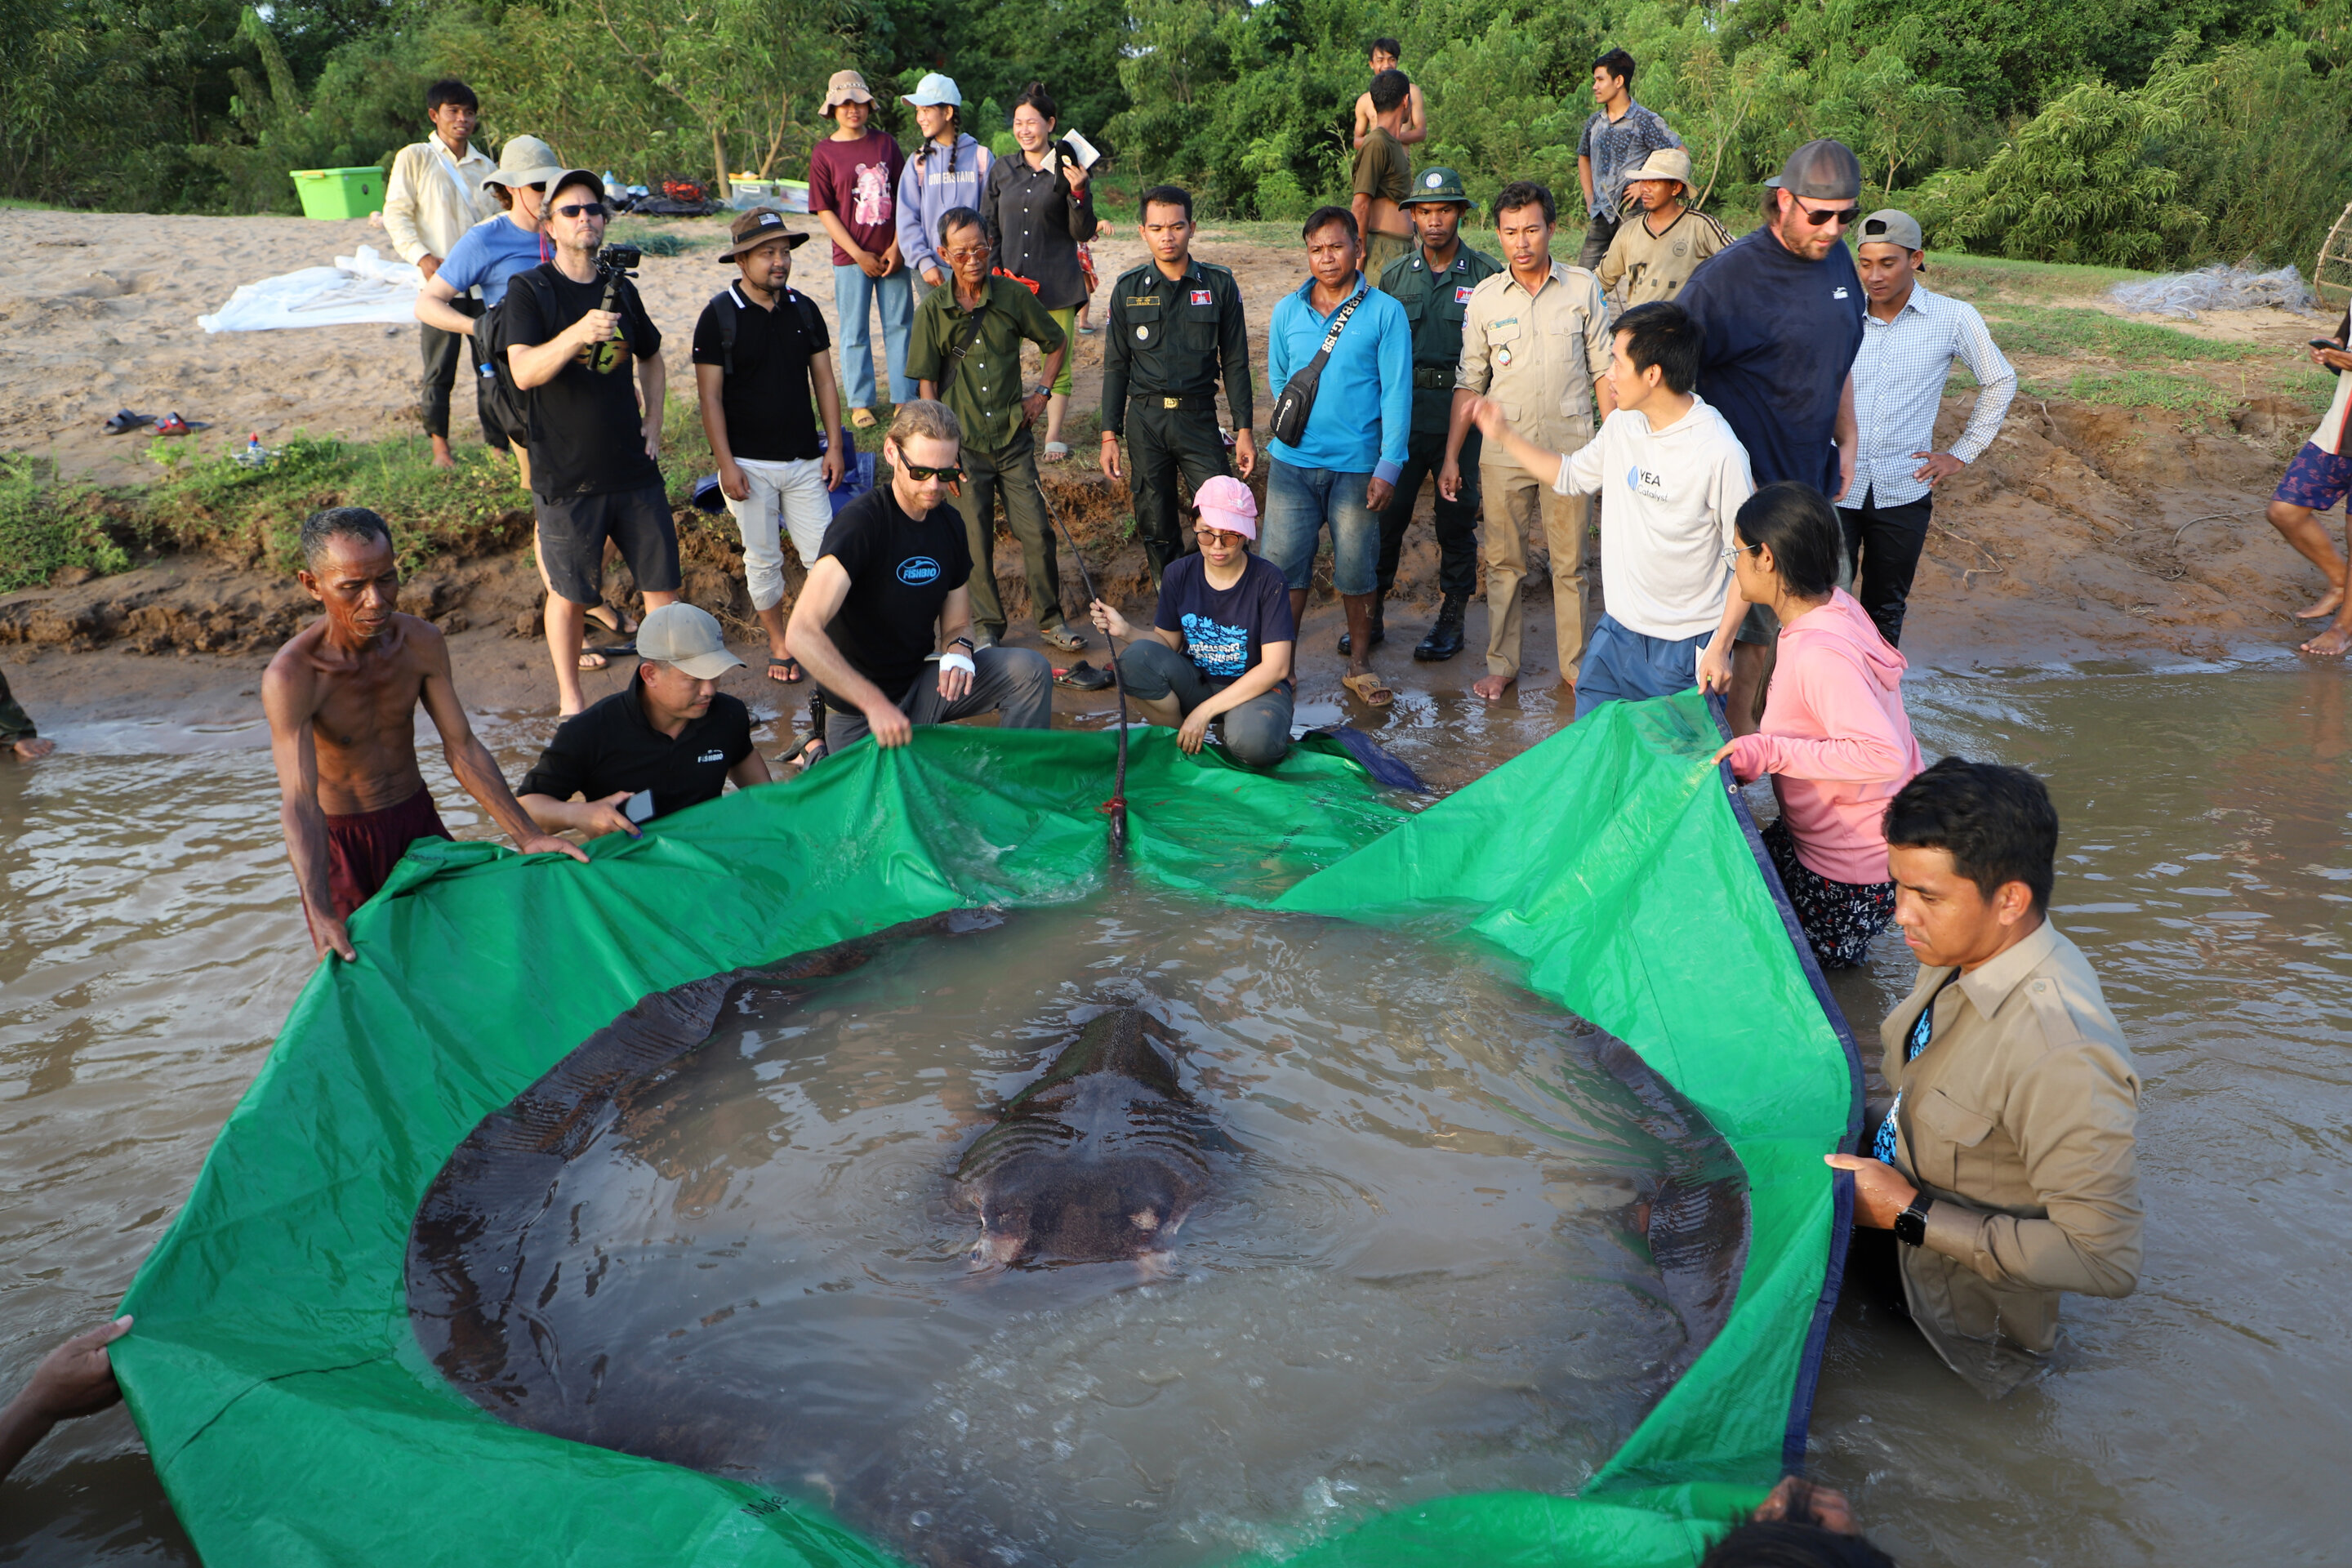 柬埔寨渔民在湄公河流域捕到一条近300公斤重的黄貂鱼 是有记录以来世界上最大淡水鱼